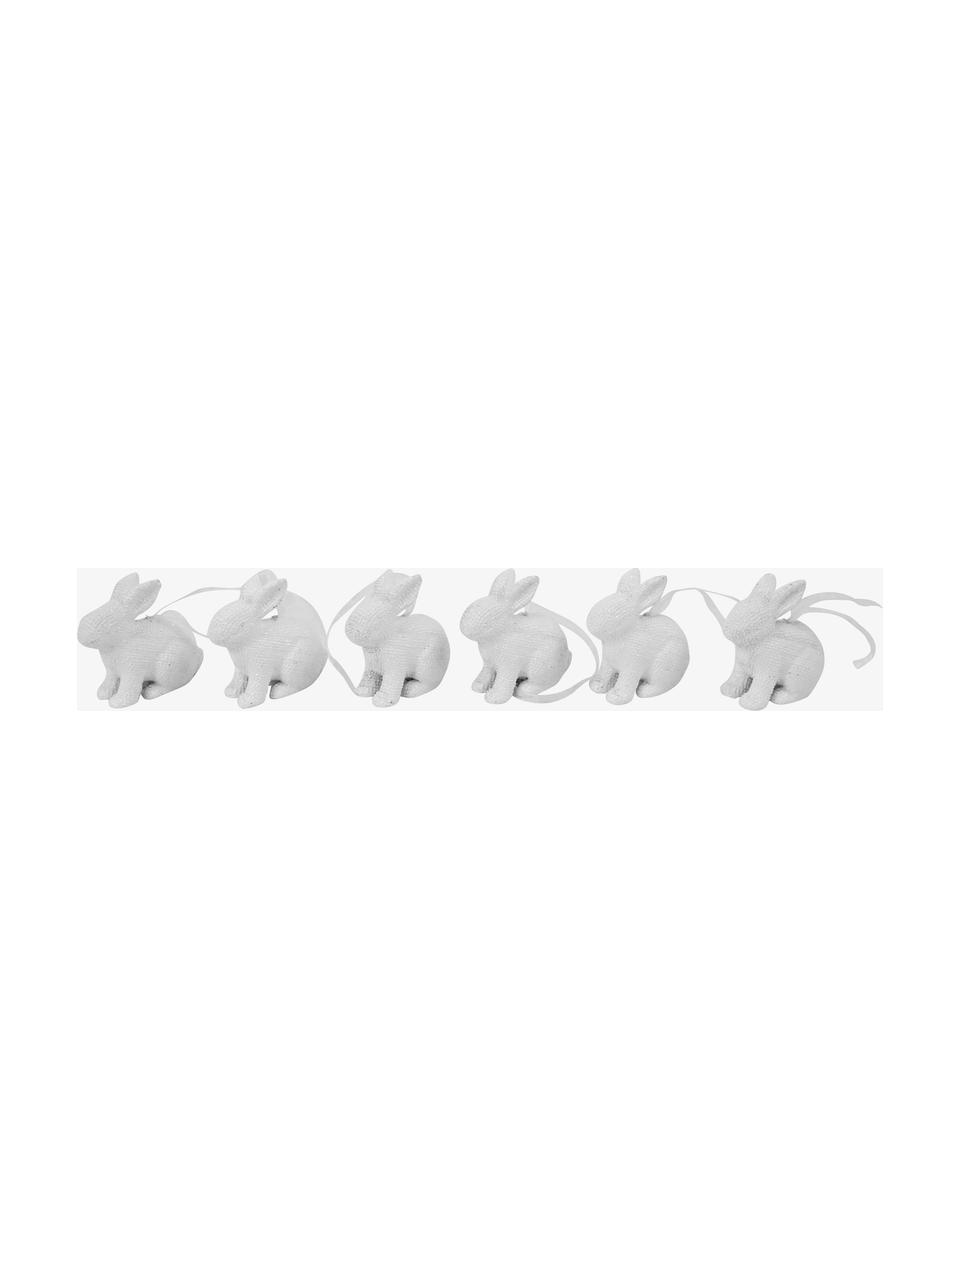 Mini wiszące zające wielkanocne Pailletti, 6 szt., Żywica, Biały, S 5 x W 6 cm